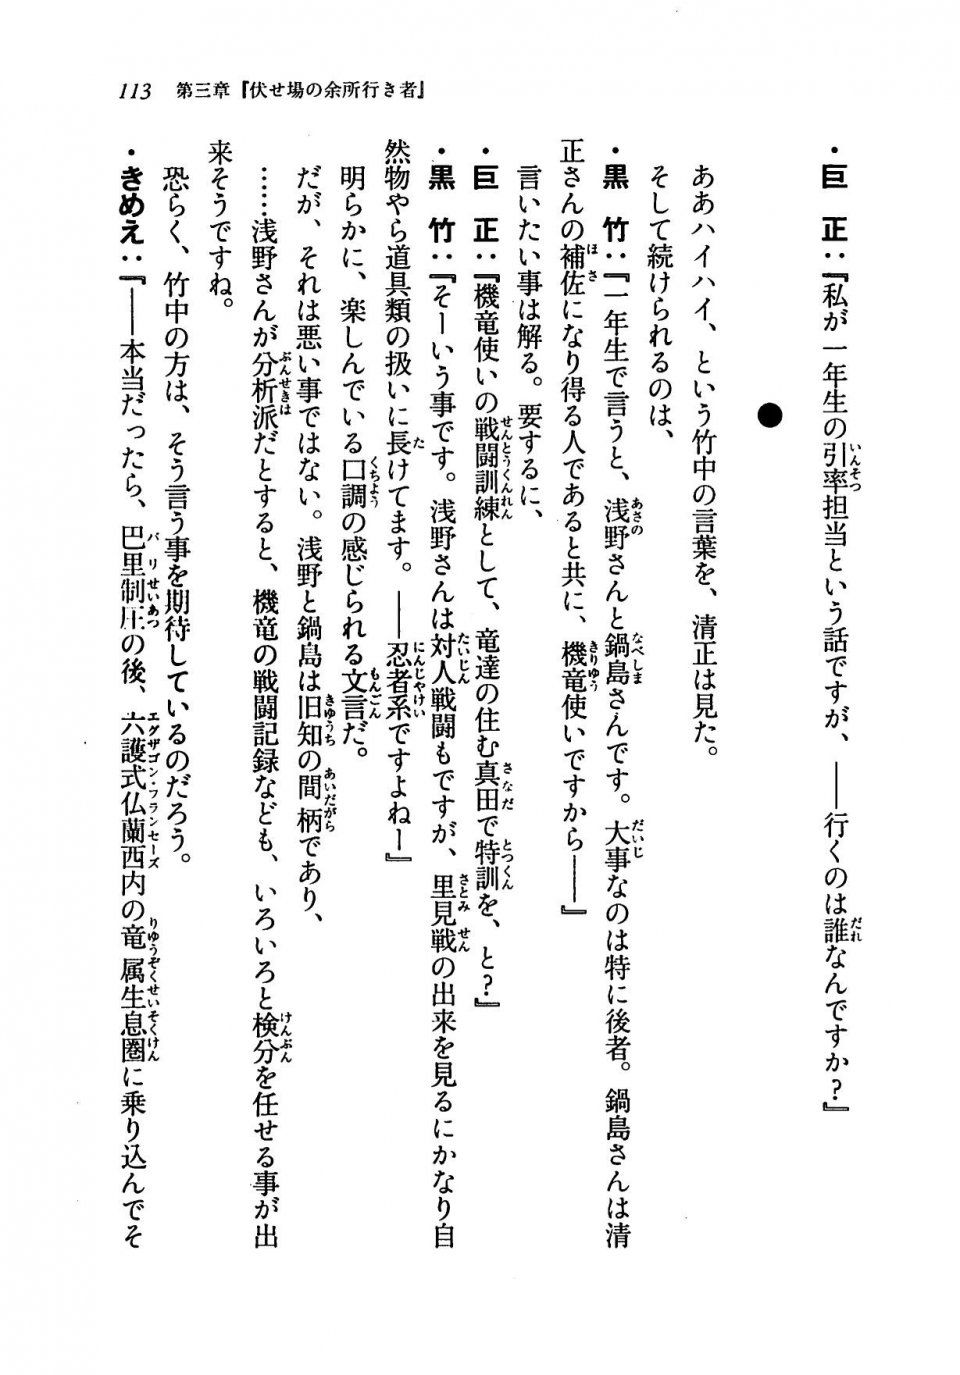 Kyoukai Senjou no Horizon LN Vol 19(8A) - Photo #113